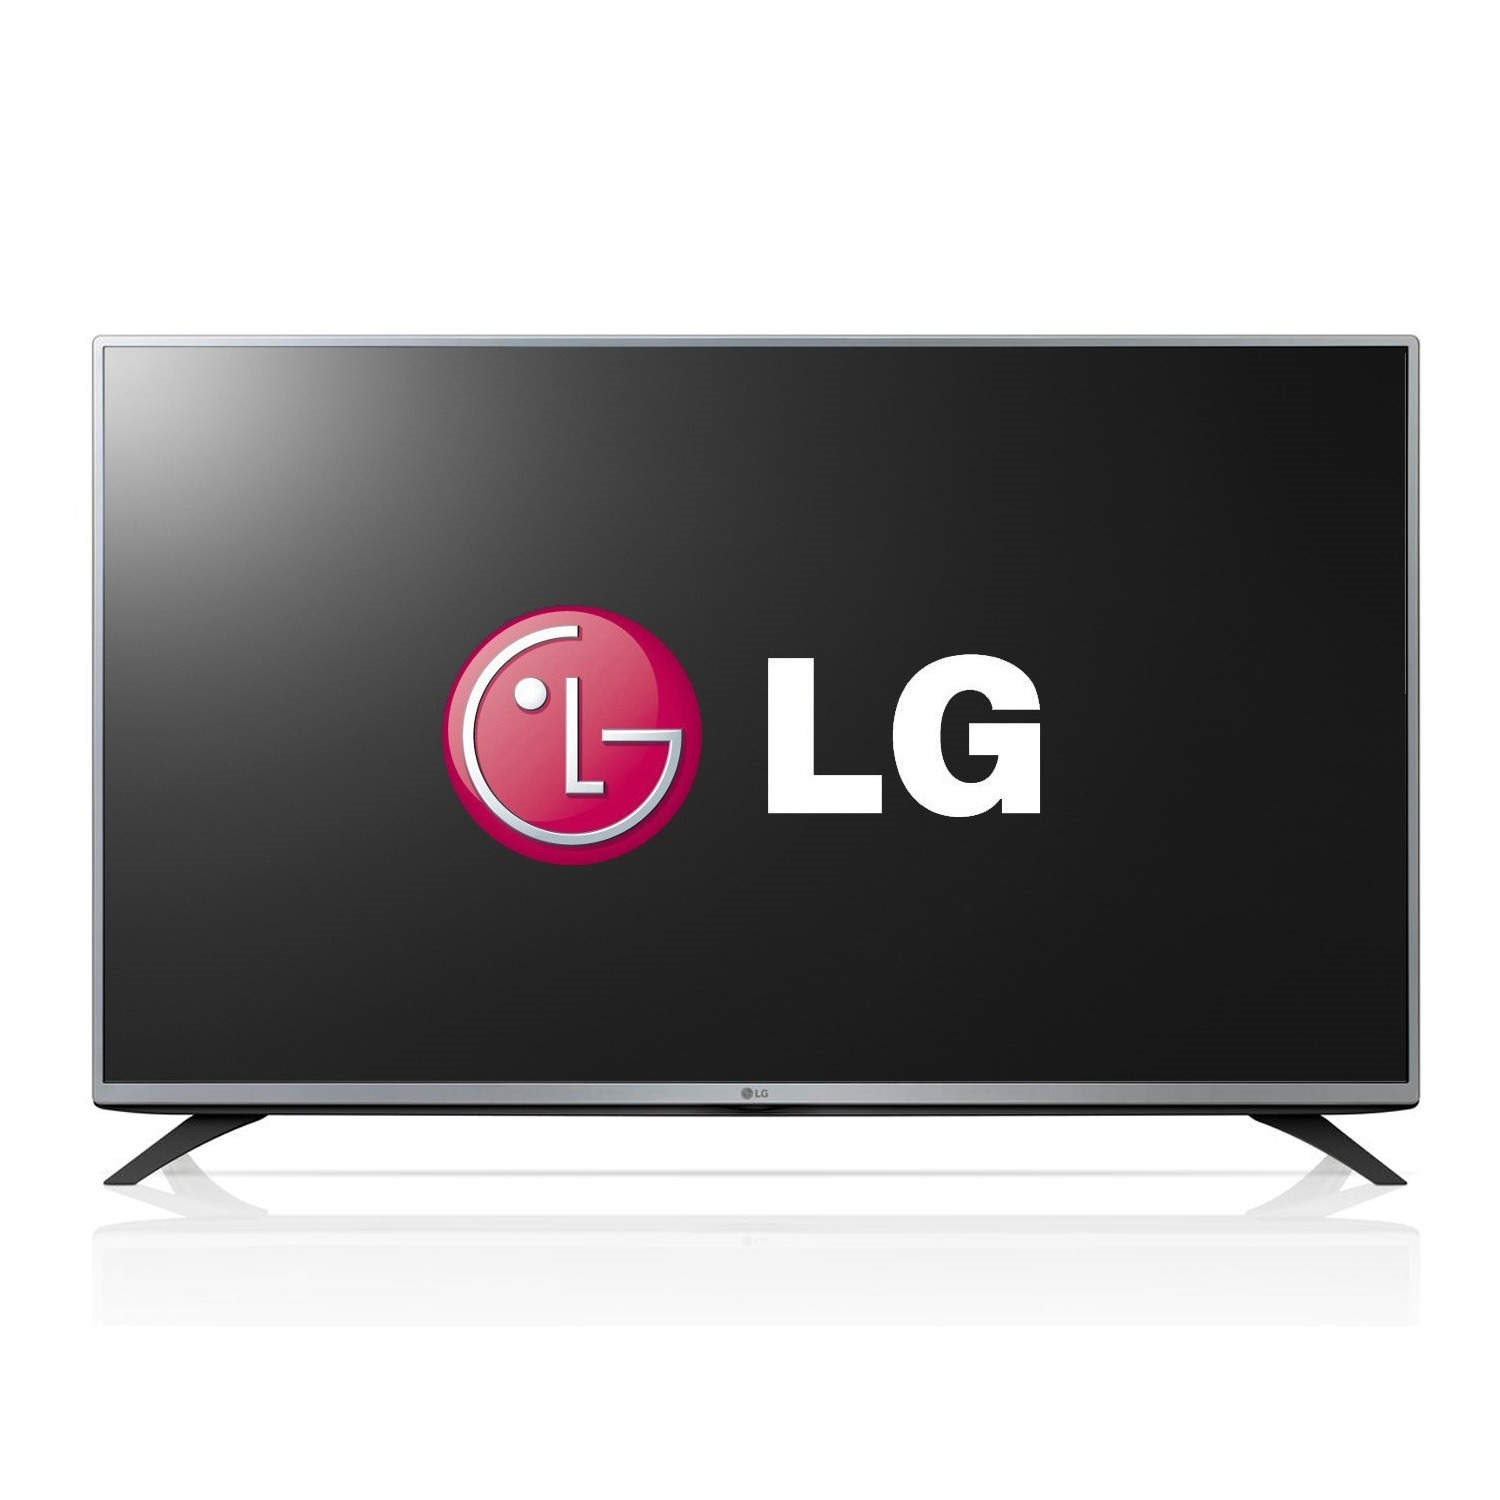 Телевизор lg lb. Телевизор LG 42lb561v. Телевизор LG 42lb561v 42". Телевизор LG lb580v. Lg43lf540v.